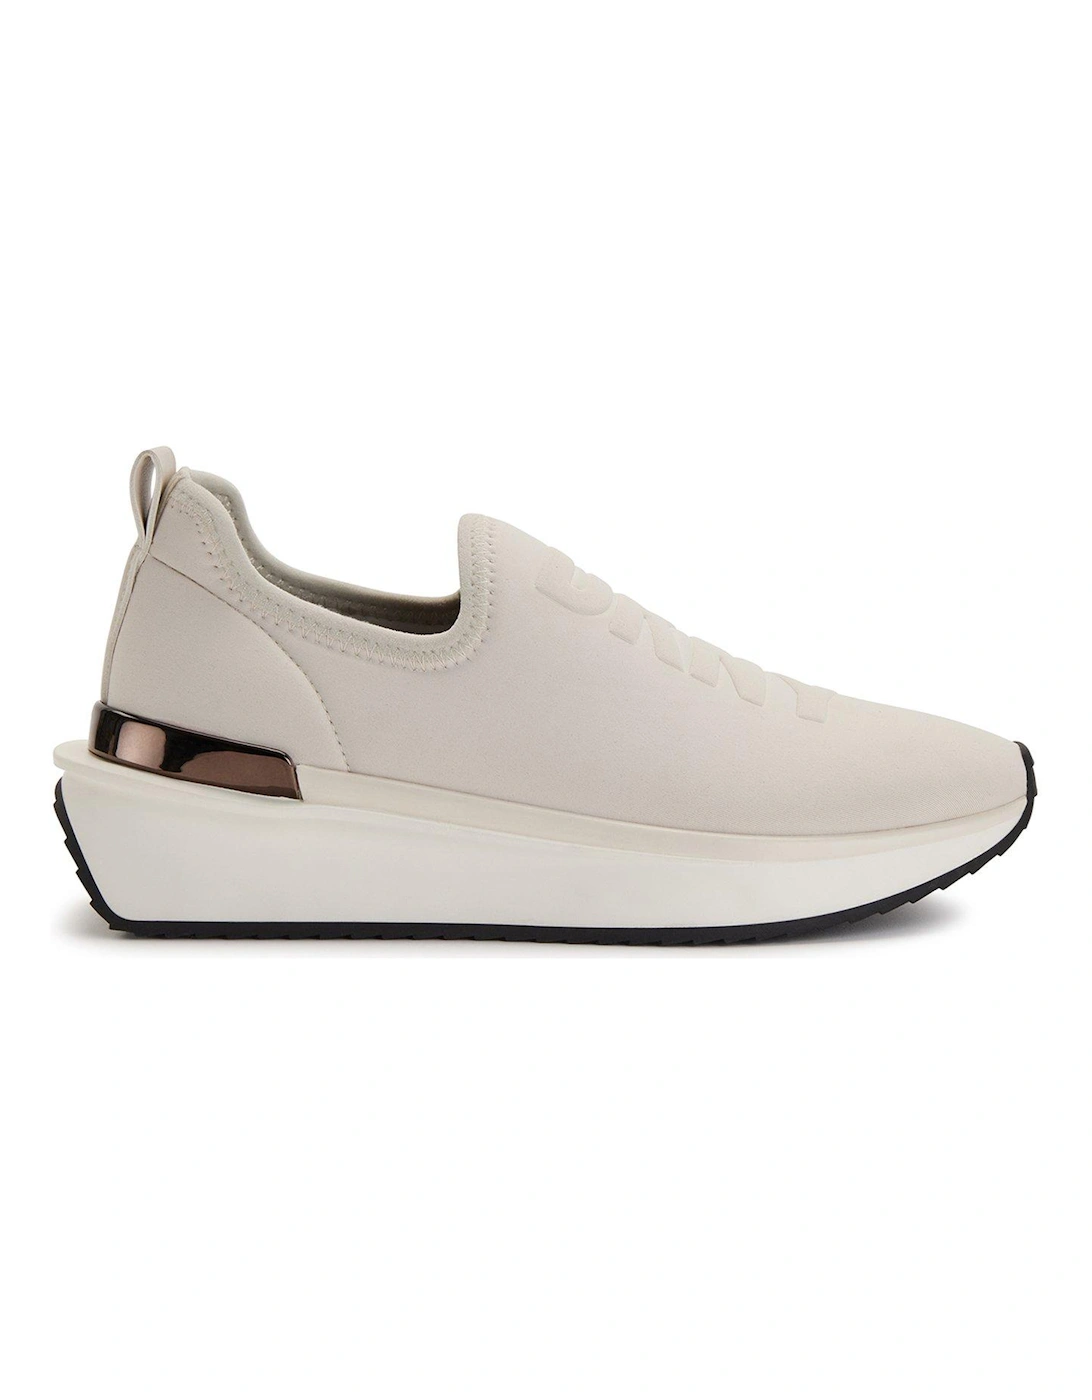 Arlan Slip On Sneaker - White, 6 of 5